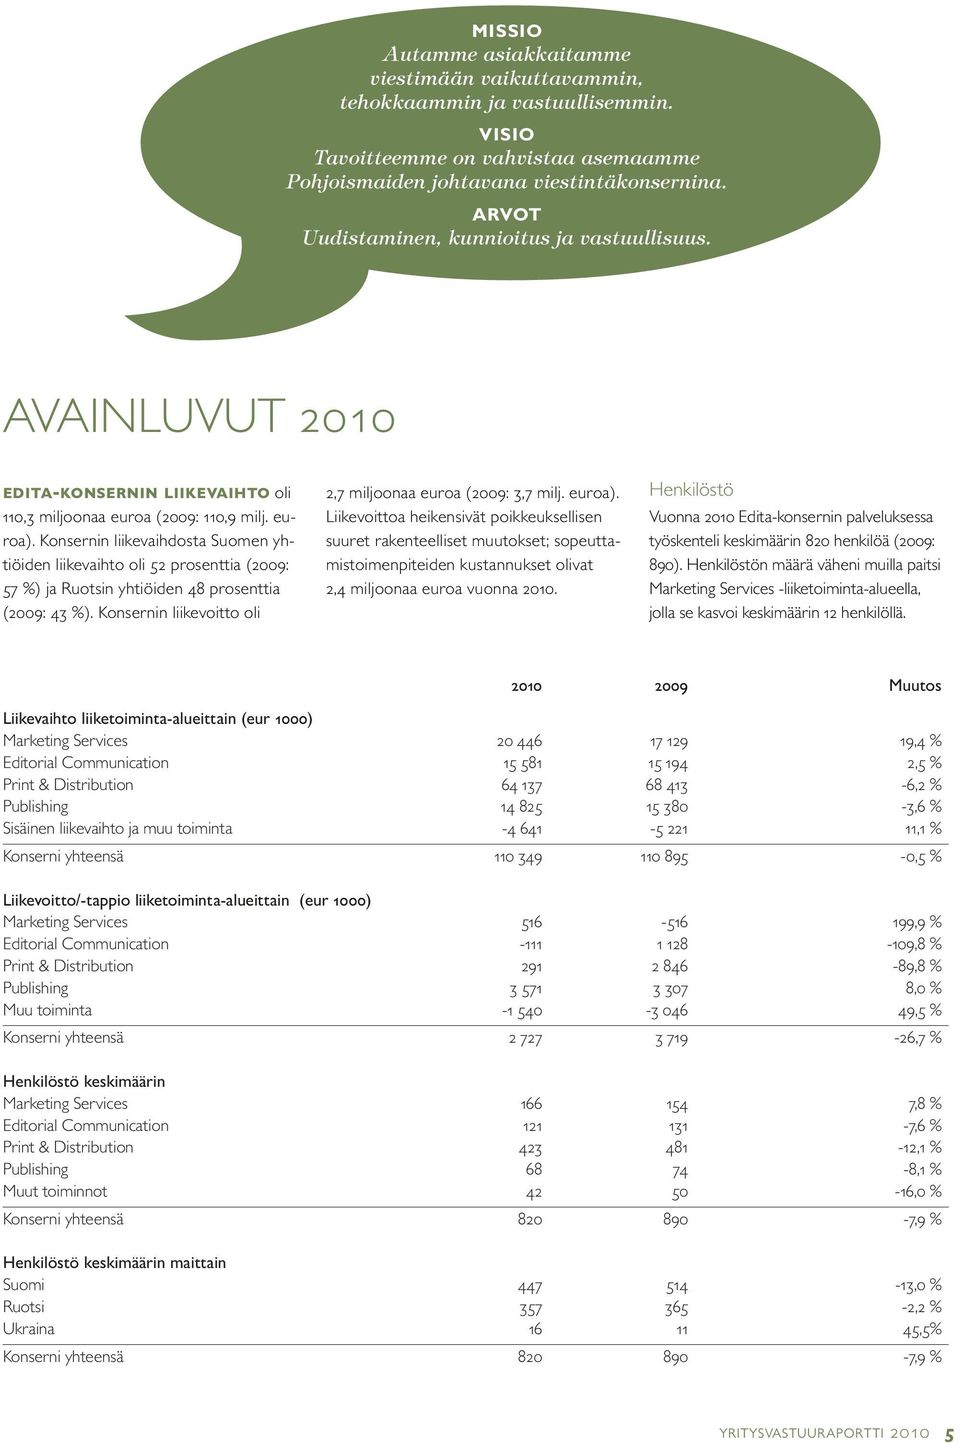 Konsernin liikevaihdosta Suomen yhtiöiden liikevaihto oli 52 prosenttia (2009: 57 %) ja Ruotsin yhtiöiden 48 prosenttia (2009: 43 %). Konsernin liikevoitto oli 2,7 miljoonaa euroa (2009: 3,7 milj.